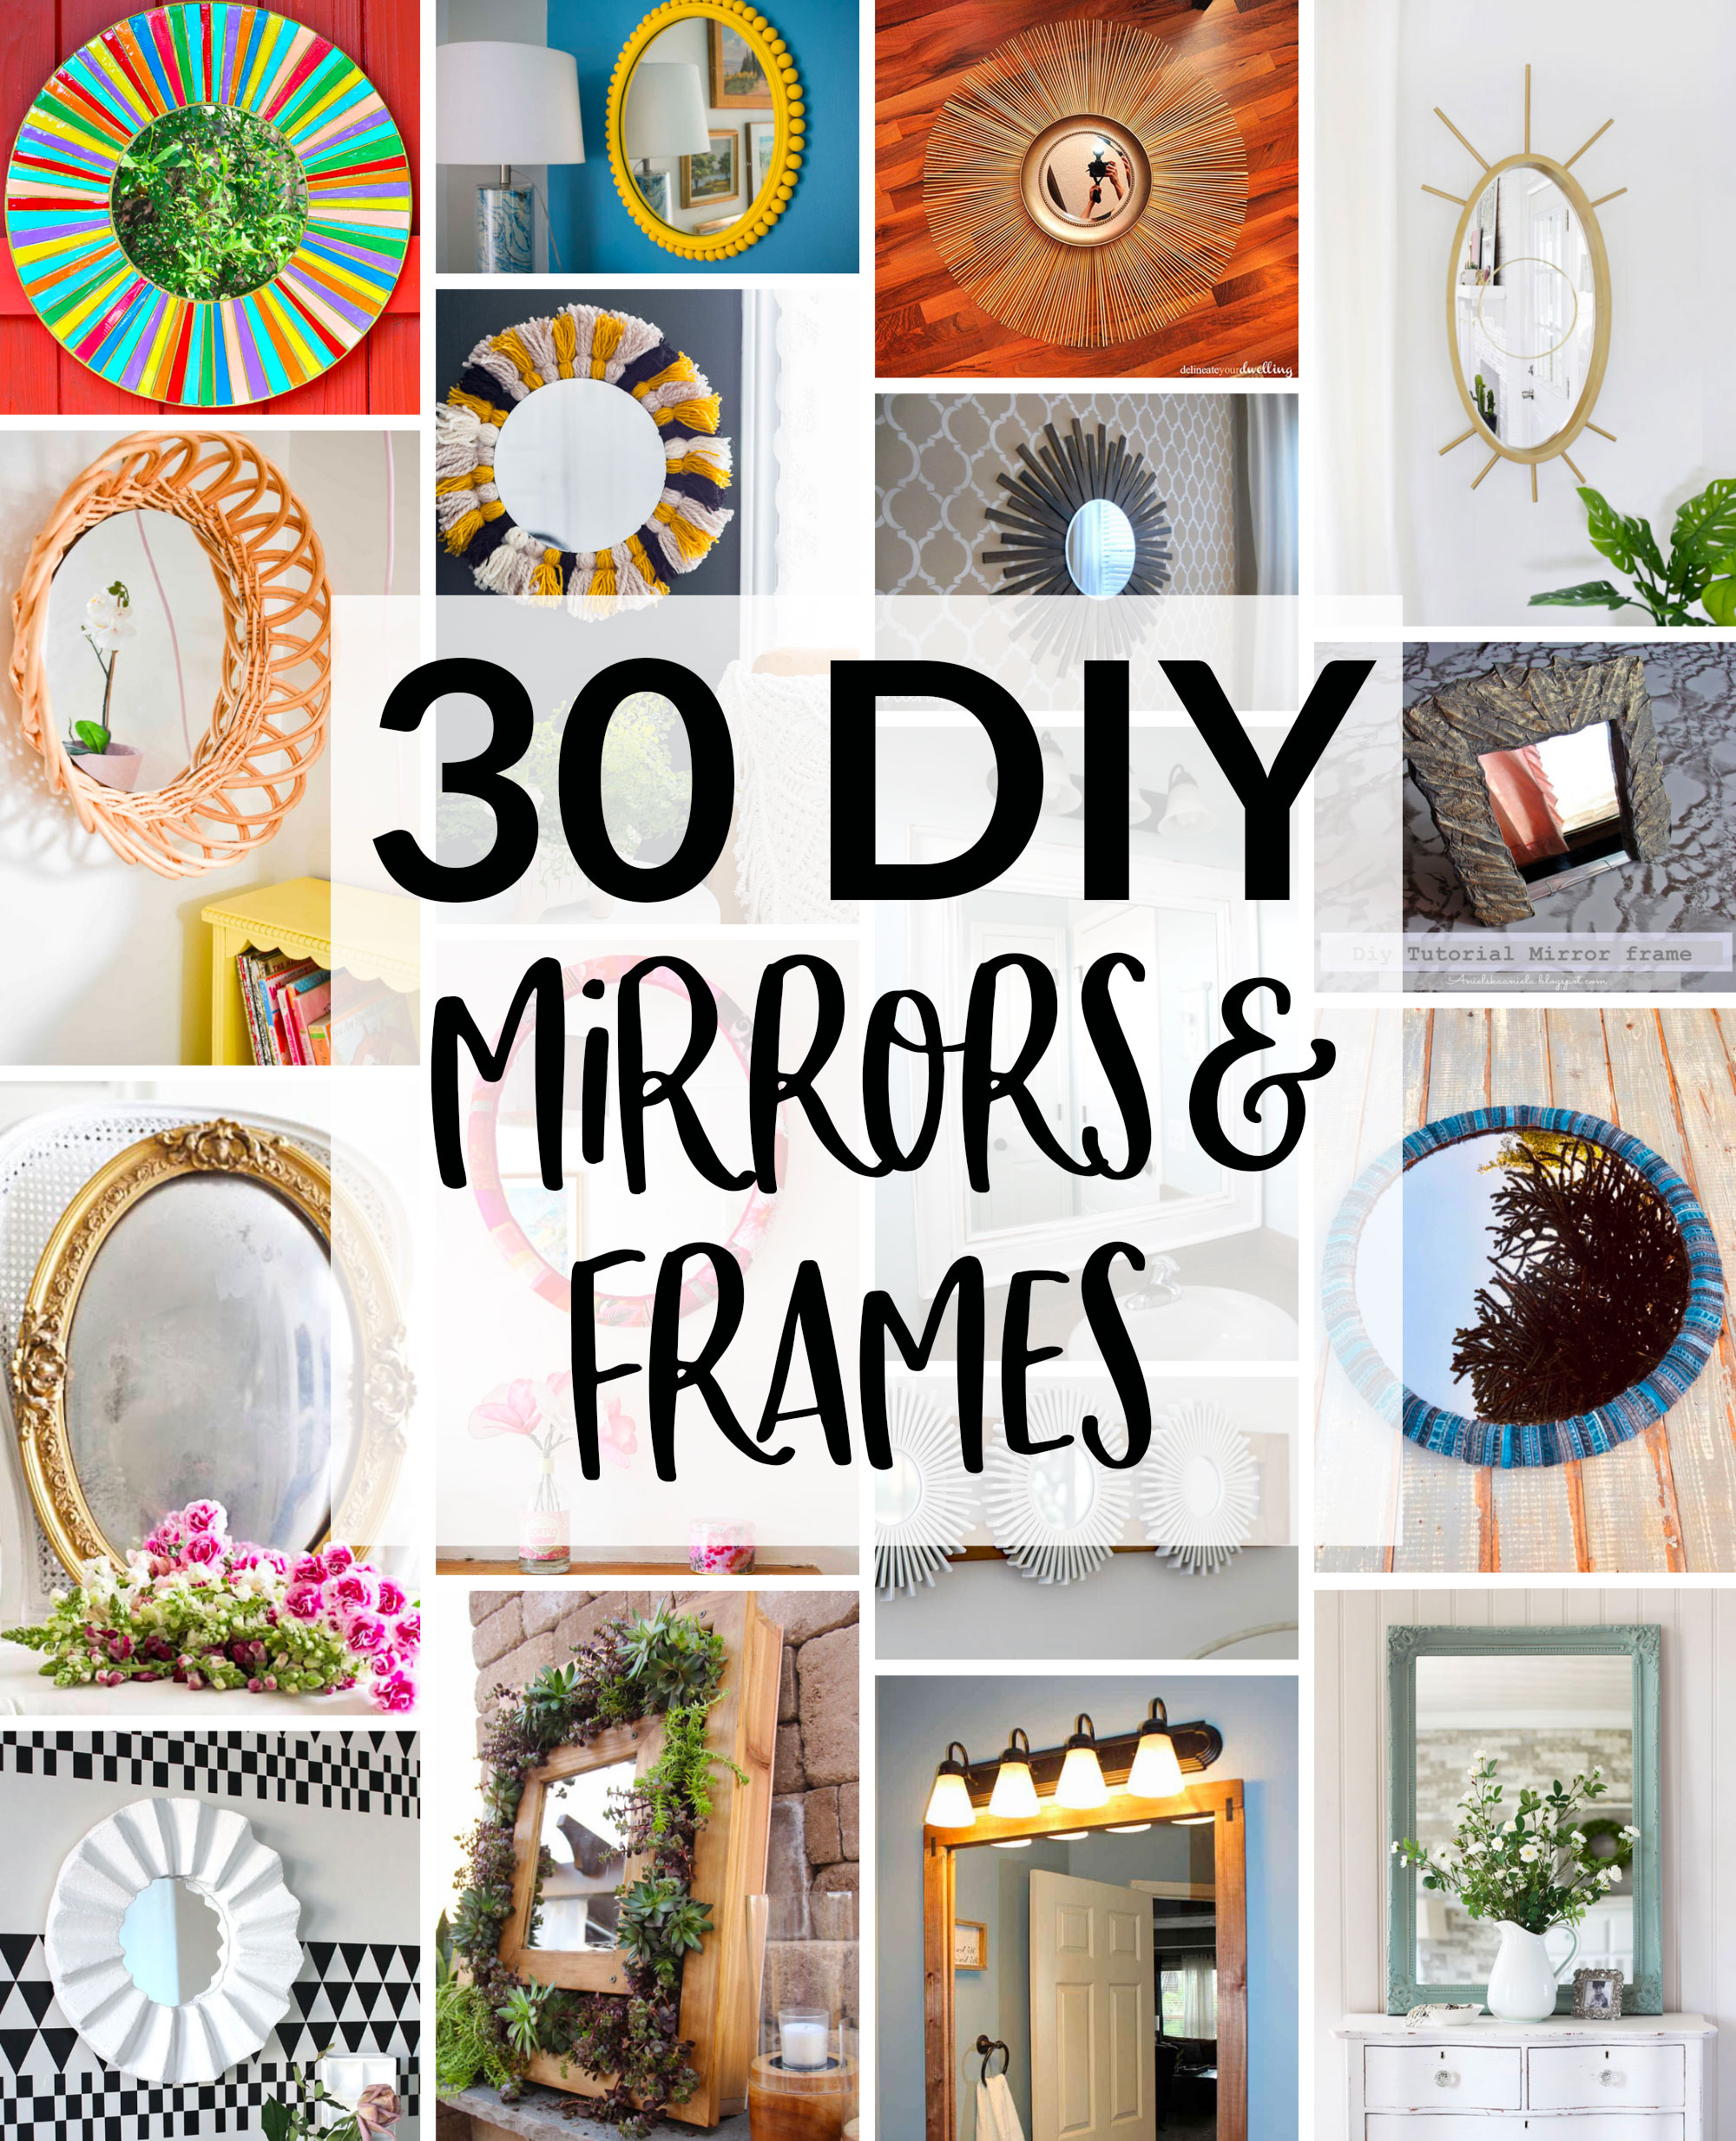 30 Diy Mirror Frames Scratch And Stitch, Diy Bathroom Mirror Frame Decorating Ideas